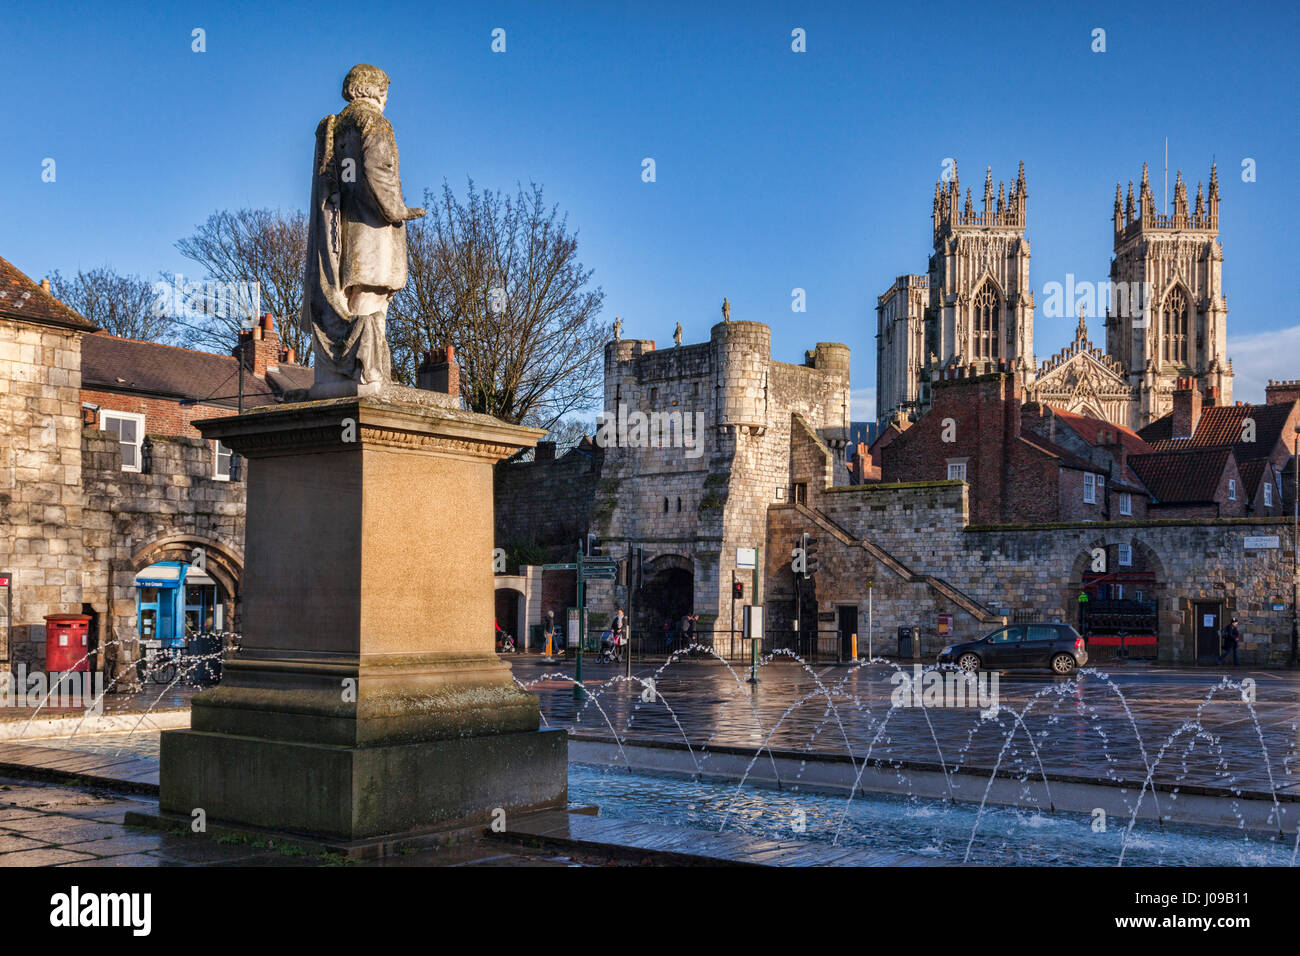 Una bella giornata invernale nella città di York, North Yorkshire, Inghilterra, Regno Unito, e il 1911 Statua di William Etty si affaccia su Monkgate e York Minster. Foto Stock